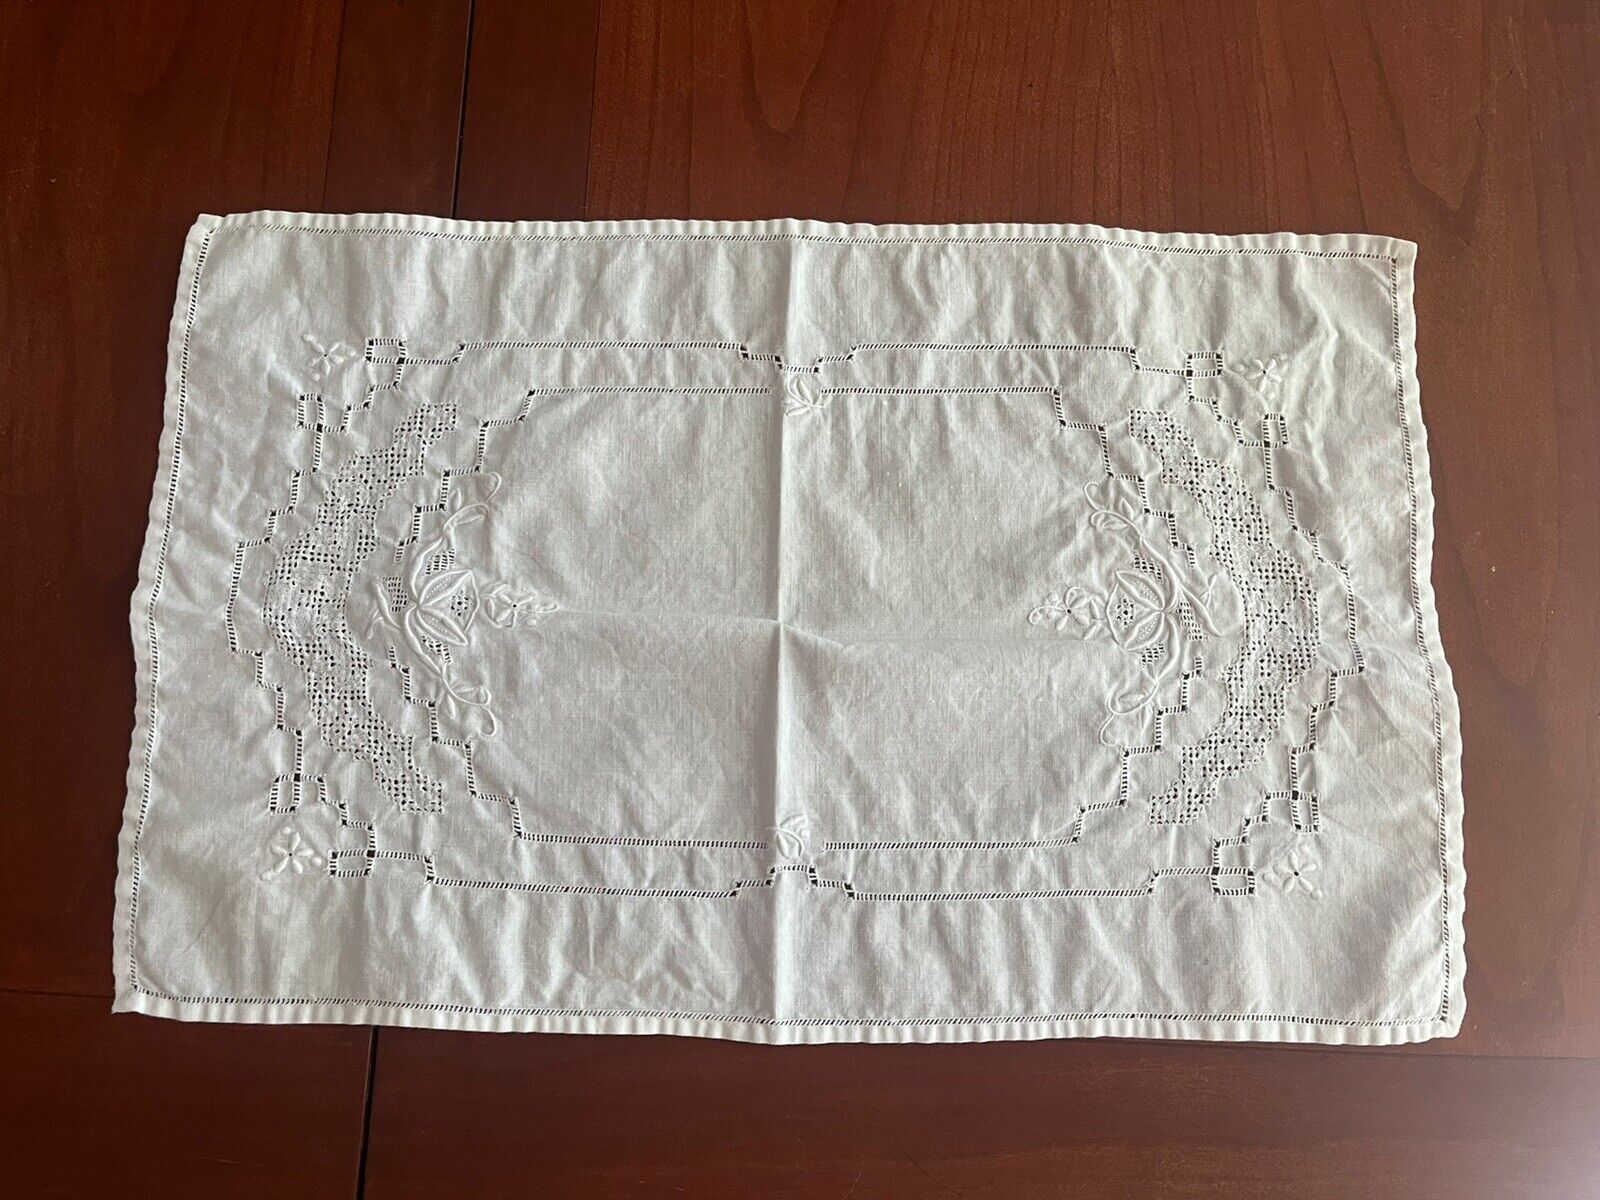 5 Embroidered Placemats/napkins Tea Cloths Vintage Cotton Cottage Core Farmhouse